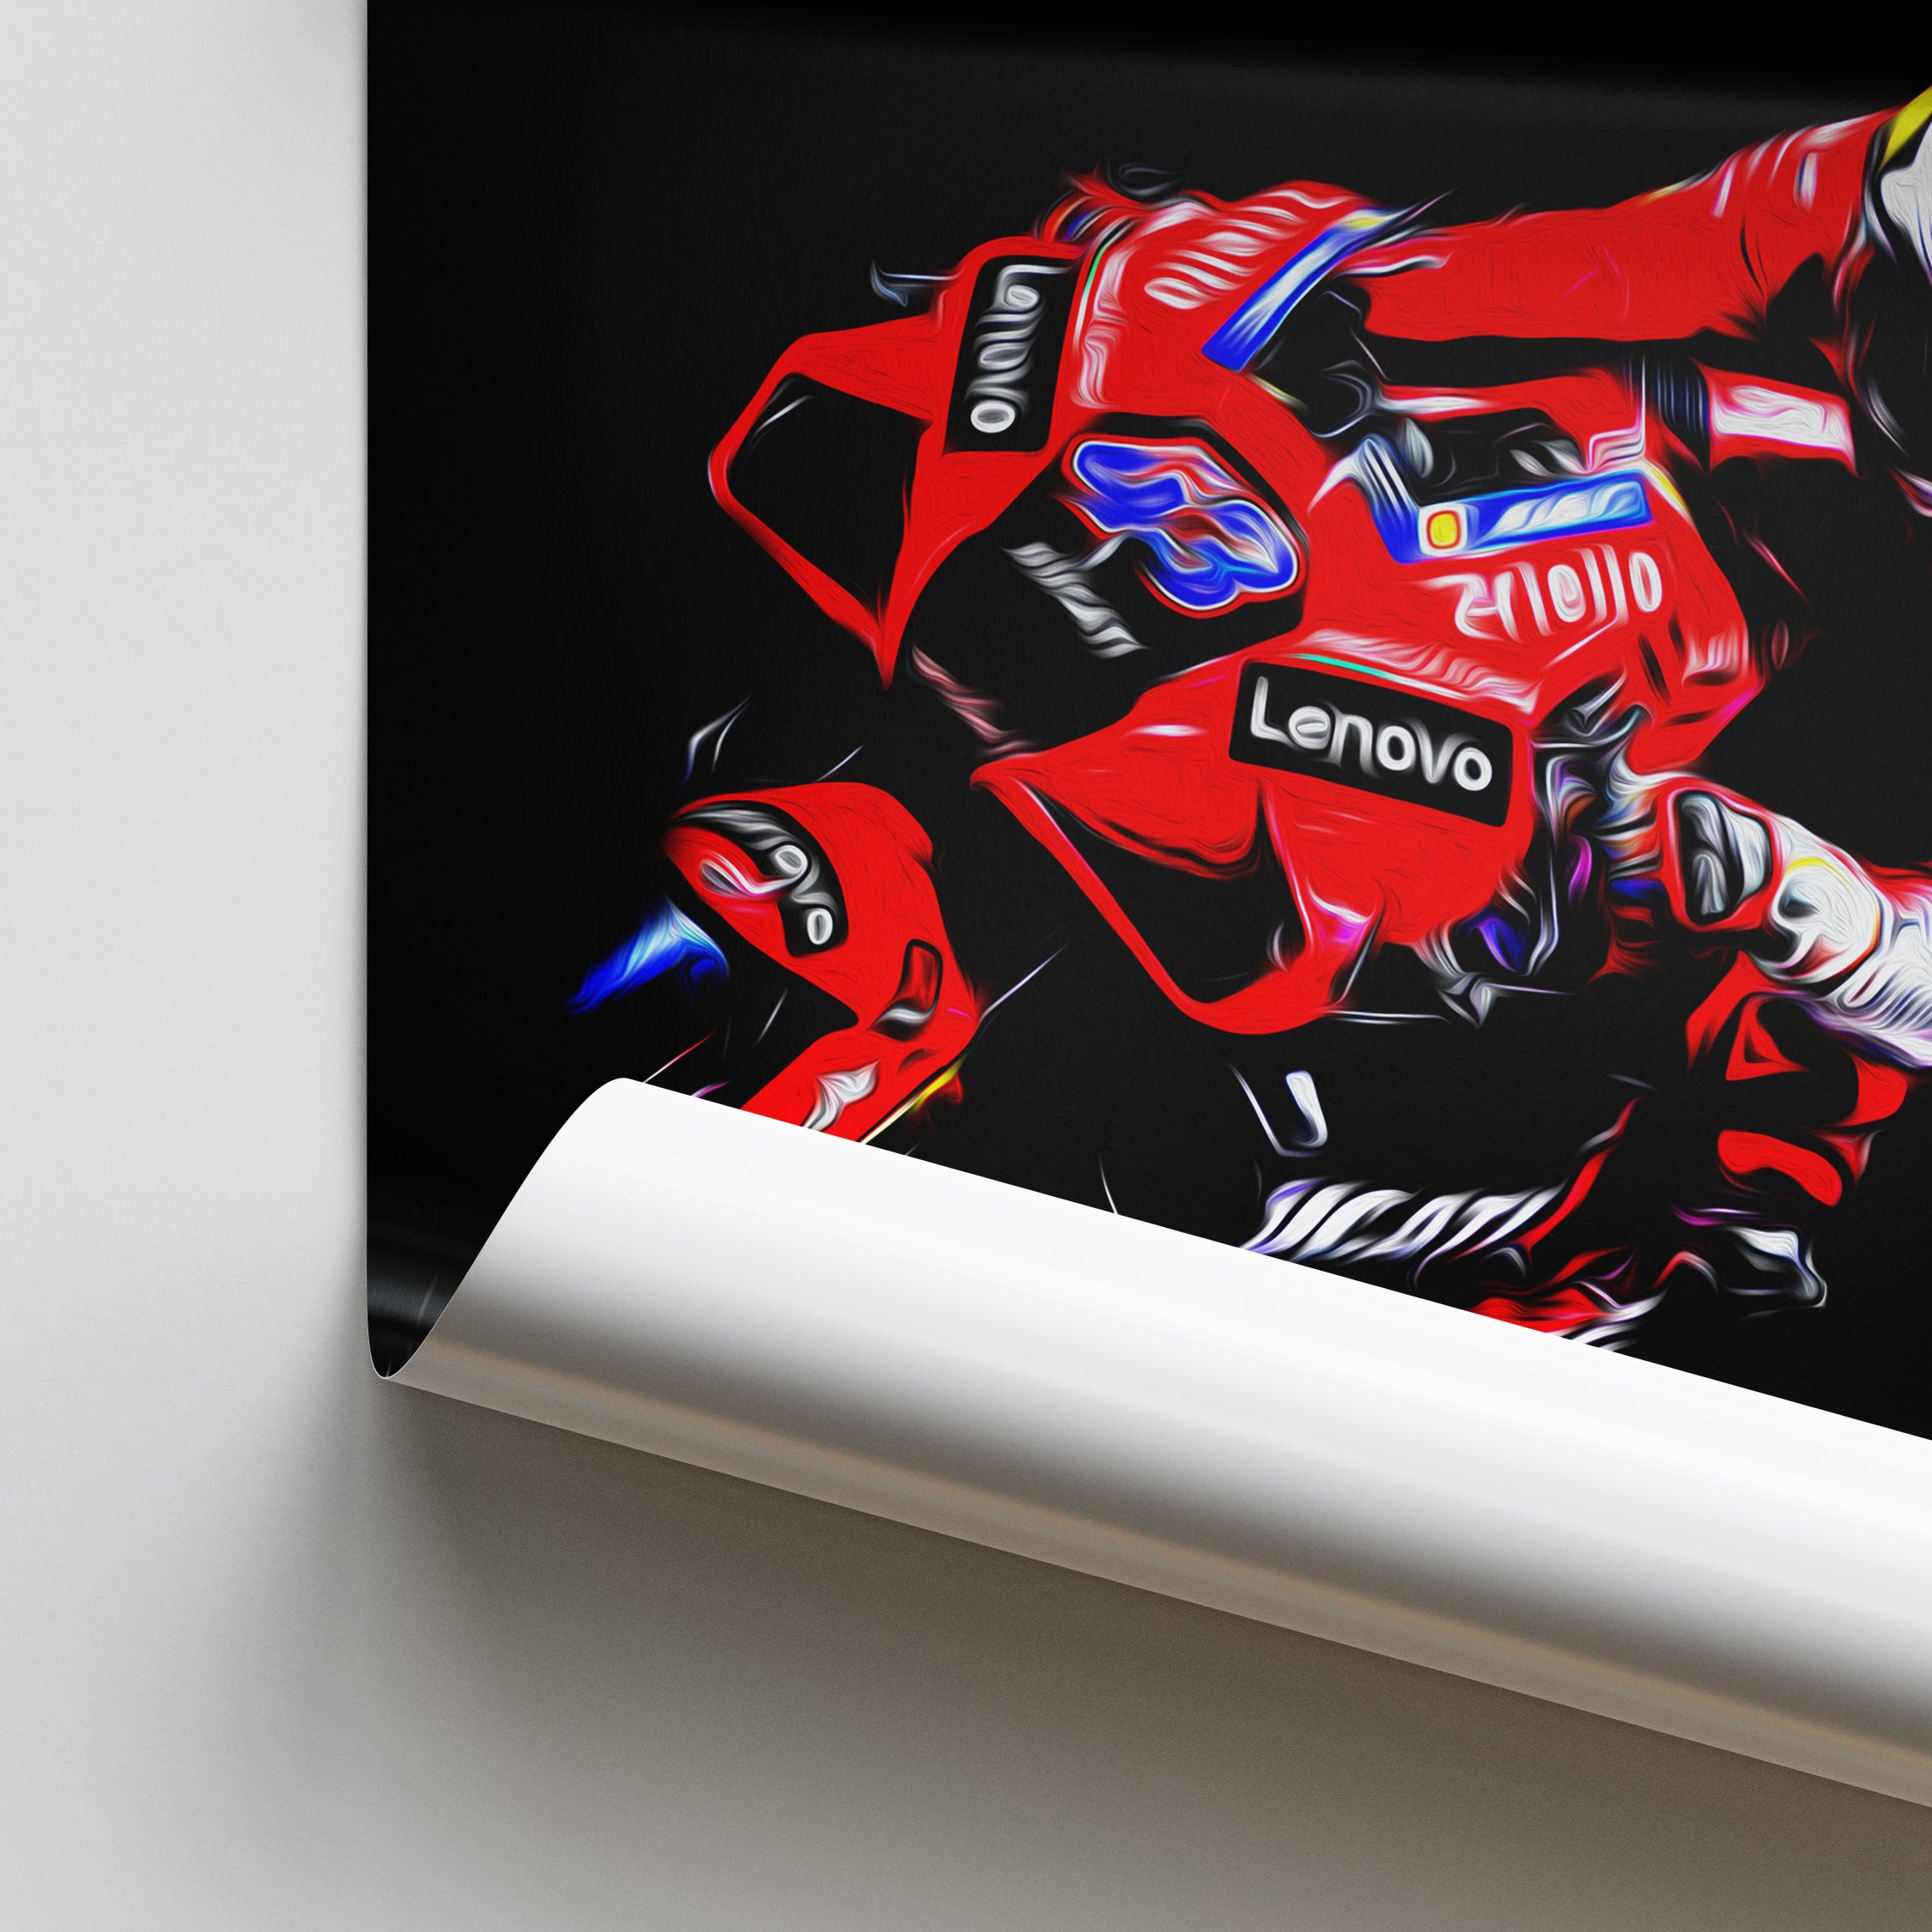 Ducati Desmosedici GP21, Jack Miller 2021 - MotoGP Print